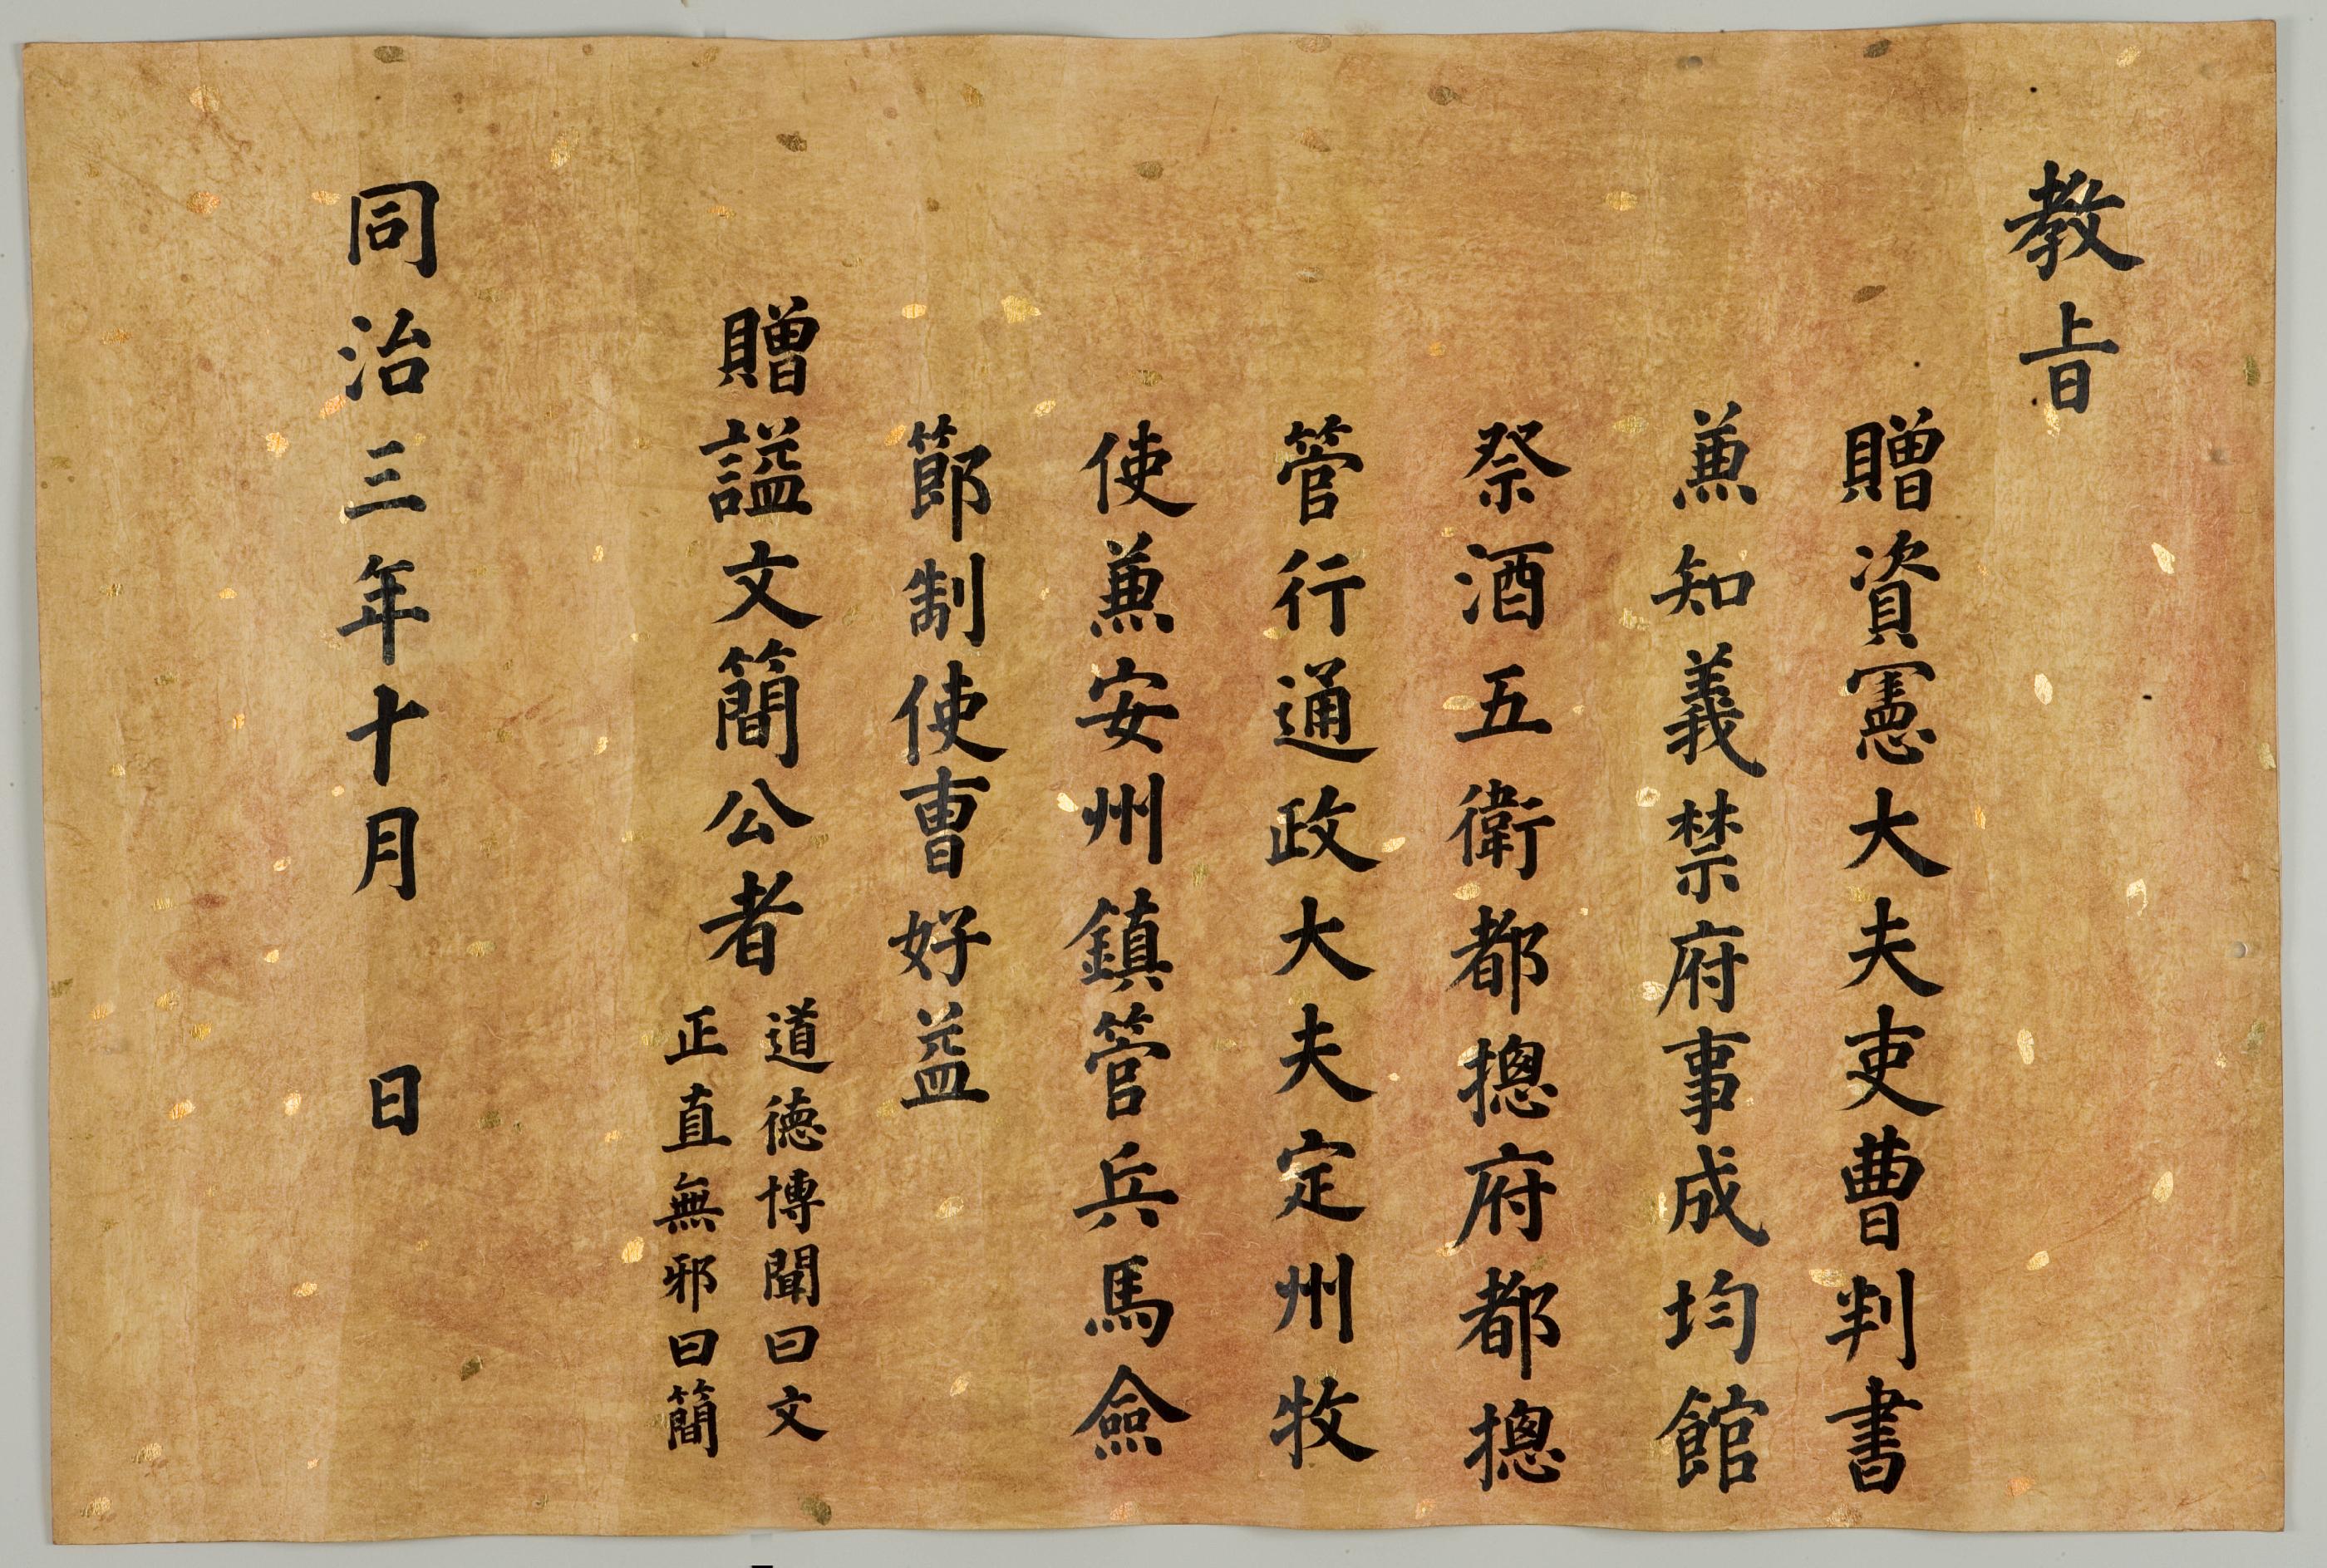 1864년에 조호익(曺好益)에게 문간(文簡)이라는 시호를 내려주는 교지